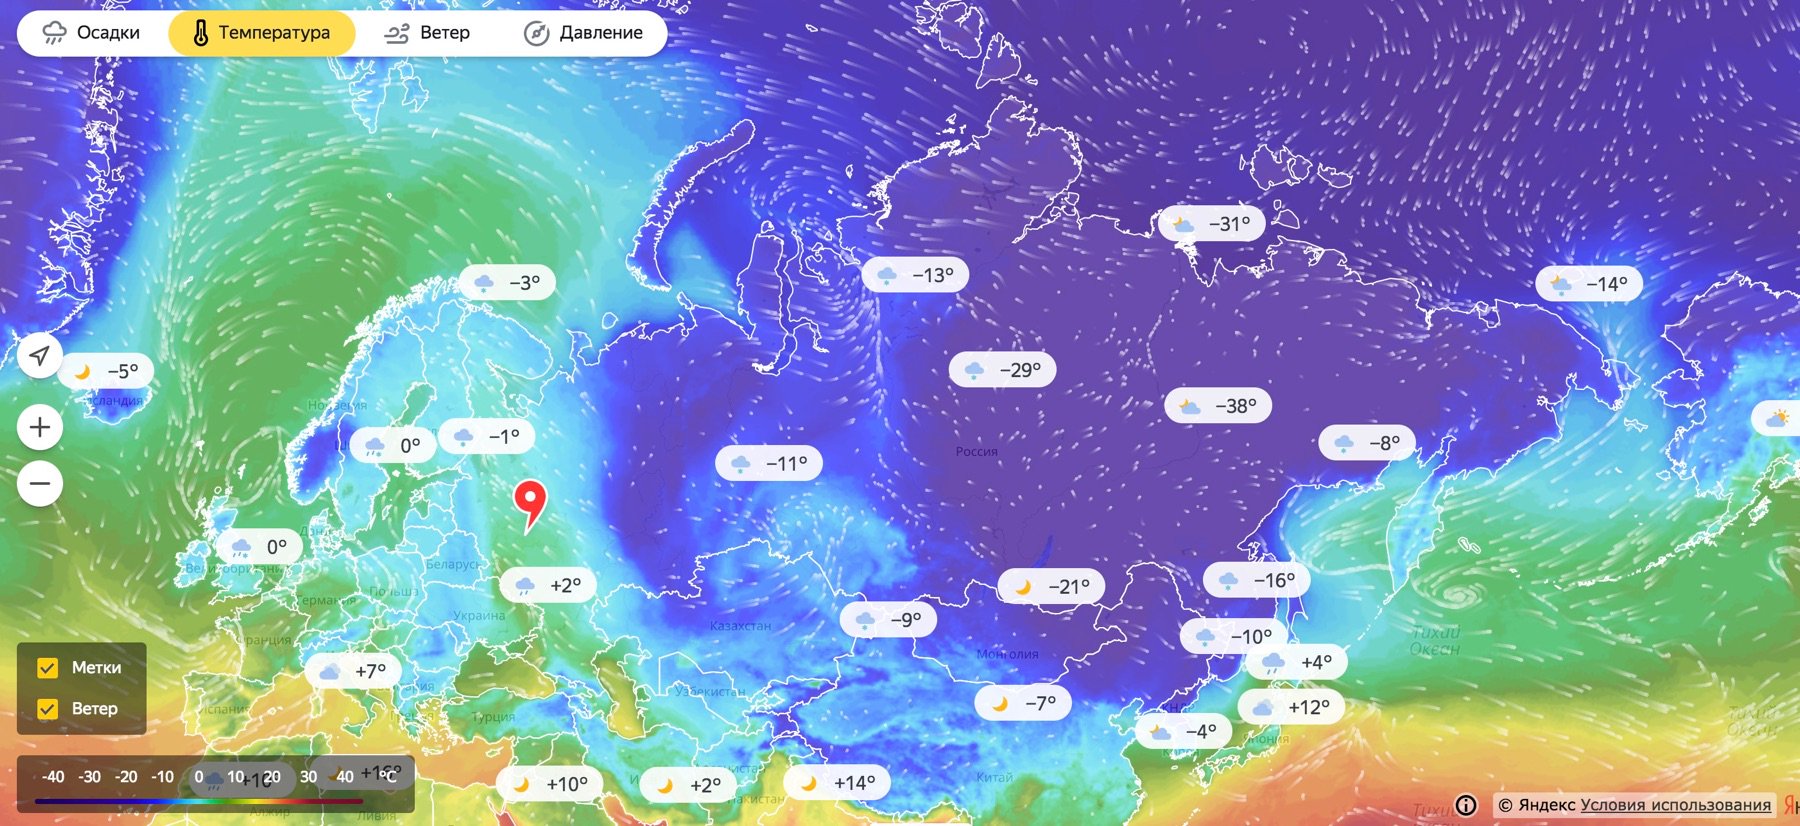 Карта где показан дождь. Карта осадков. Карта осадков Москва. Карта осадков с ветром. Осадки на карте в реальном времени.